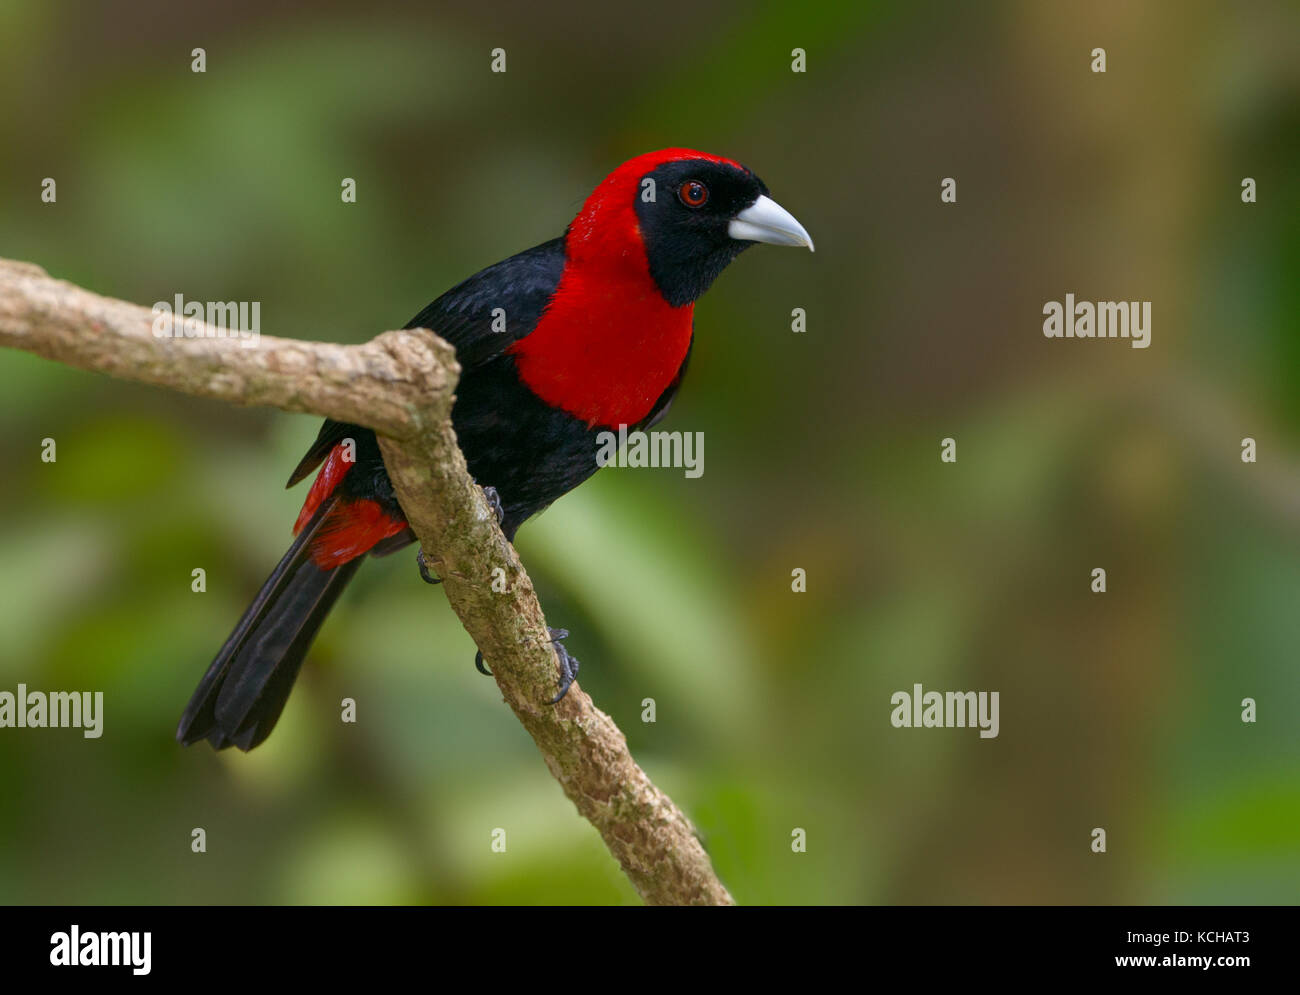 Crimson-collared-Tanager (Ramphocelus sanguinolentus) at the Nature Pavilion in La Virgen, Costa Rica Stock Photo